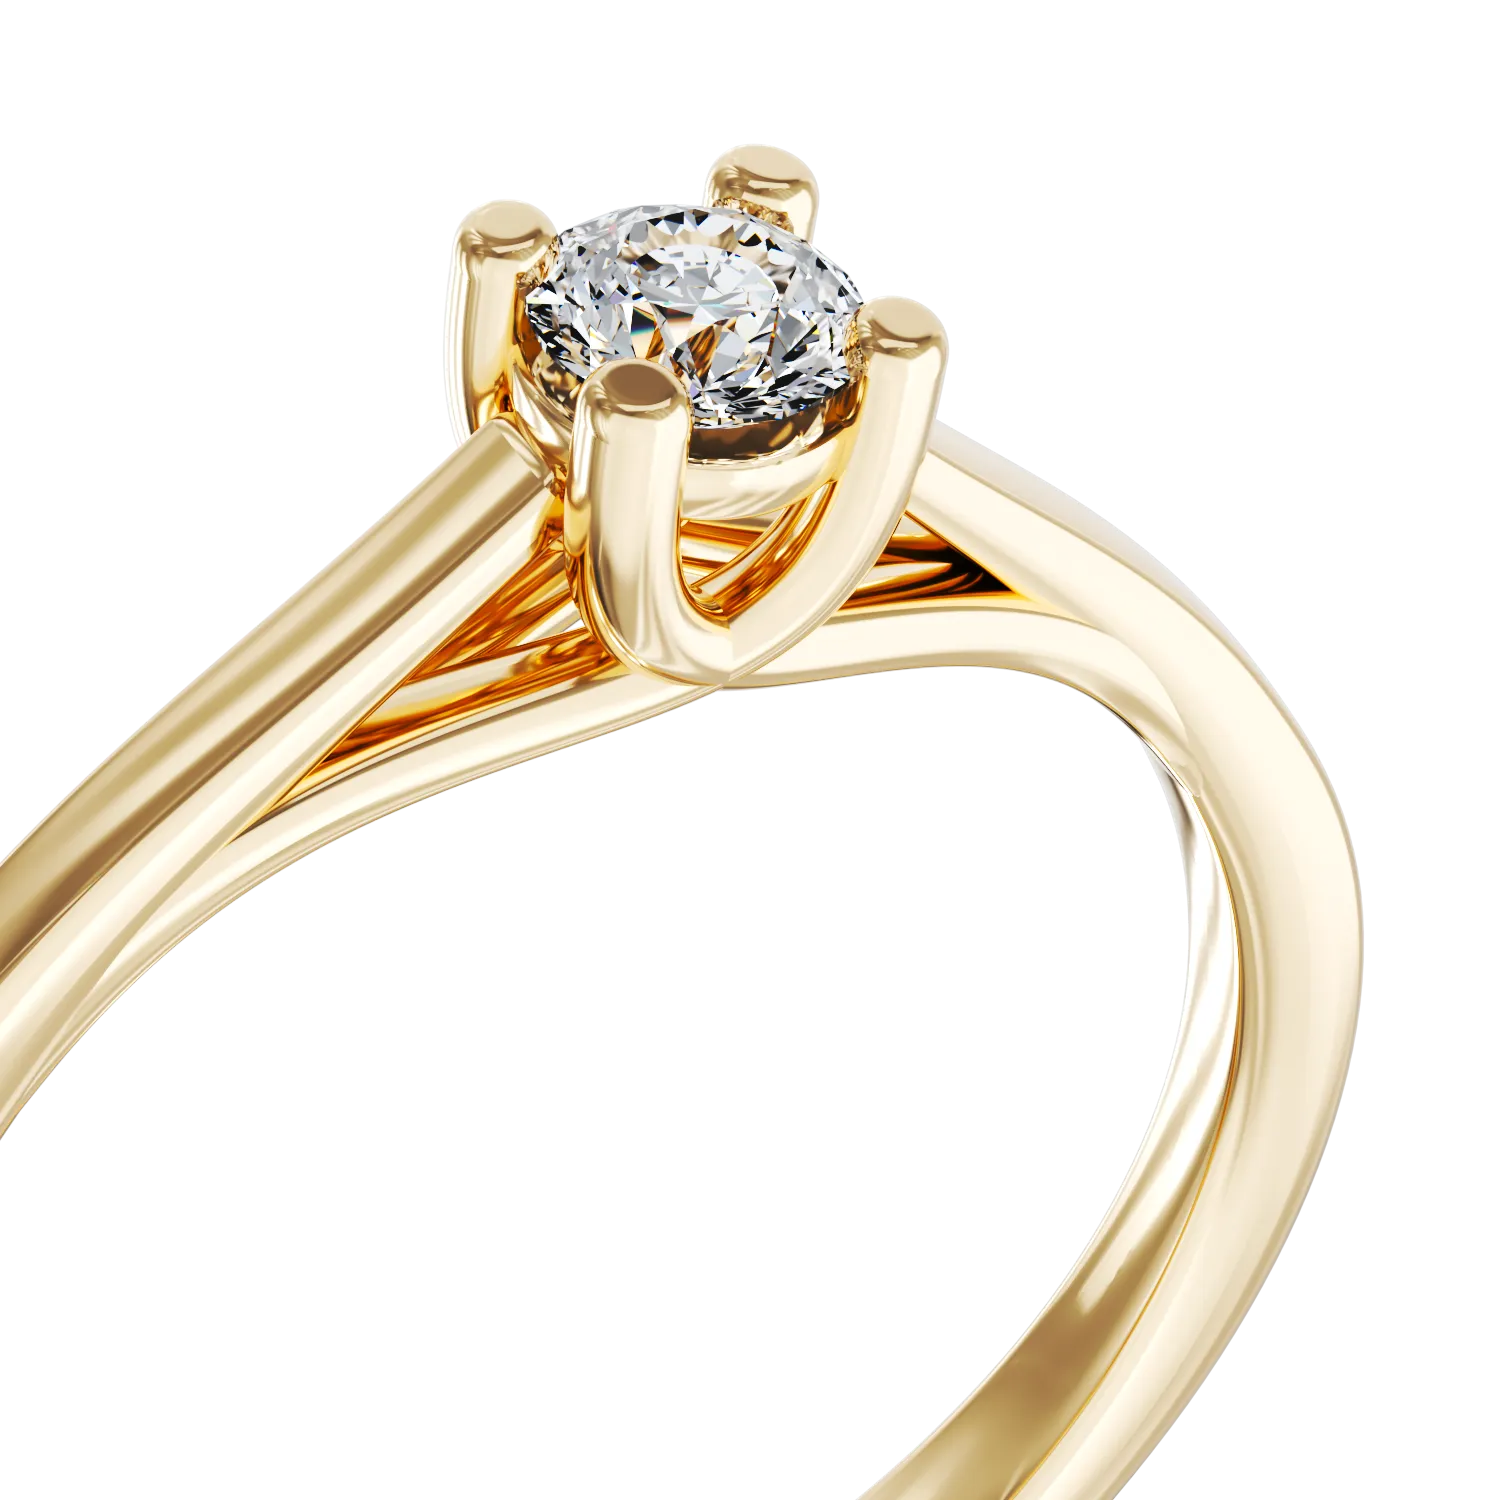 Eljegyzési gyűrű 18K-os sárga aranyból 0,16ct gyémánttal. Gramm: 3,09